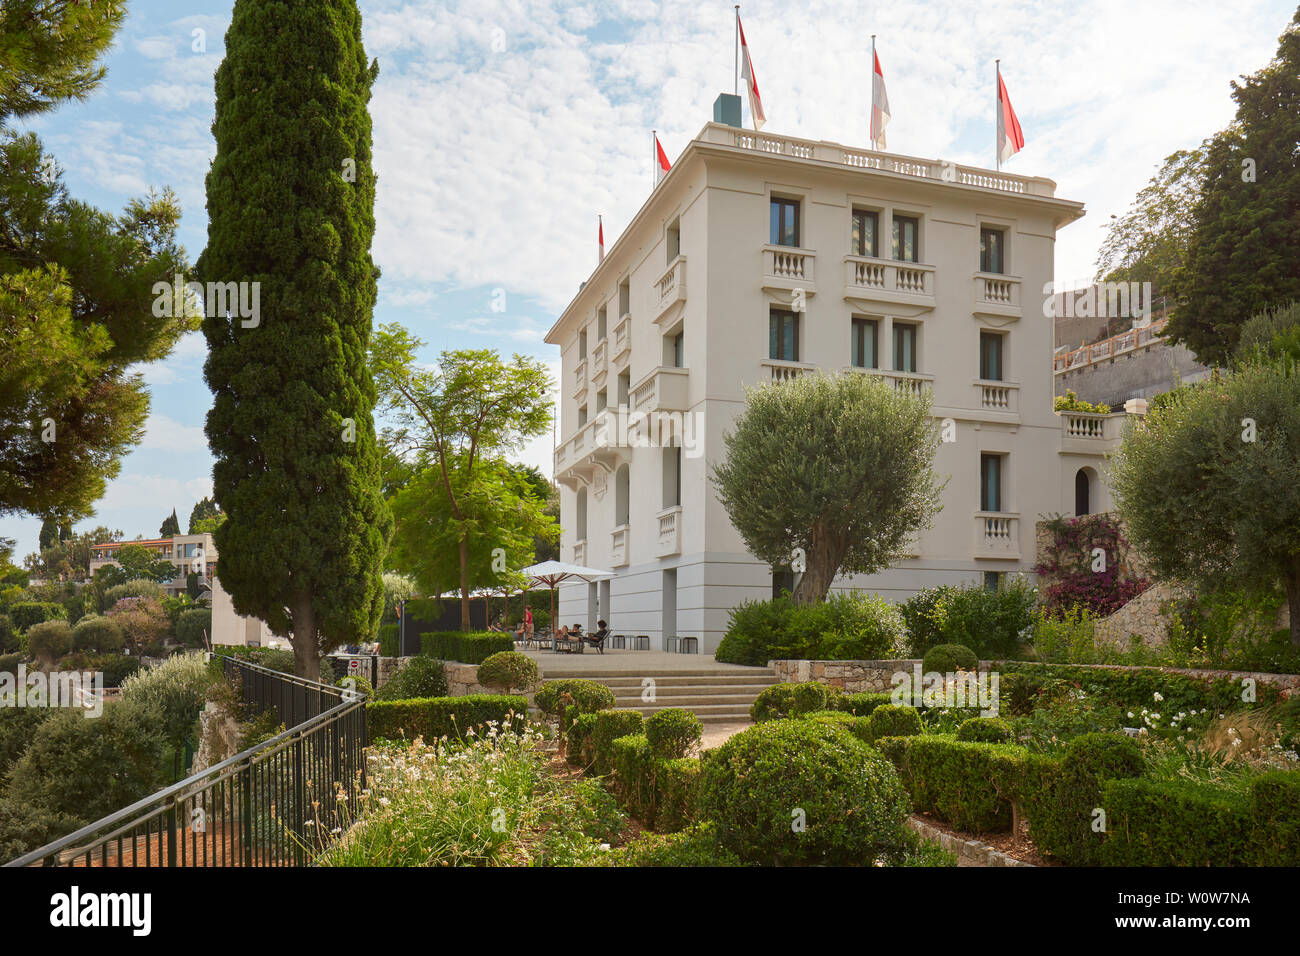 MONTE CARLO, MONACO - AUGUST 20, 2016: Villa Paloma contemporary art museum and garden in a sunny summer day in Monte Carlo, Monaco. Stock Photo